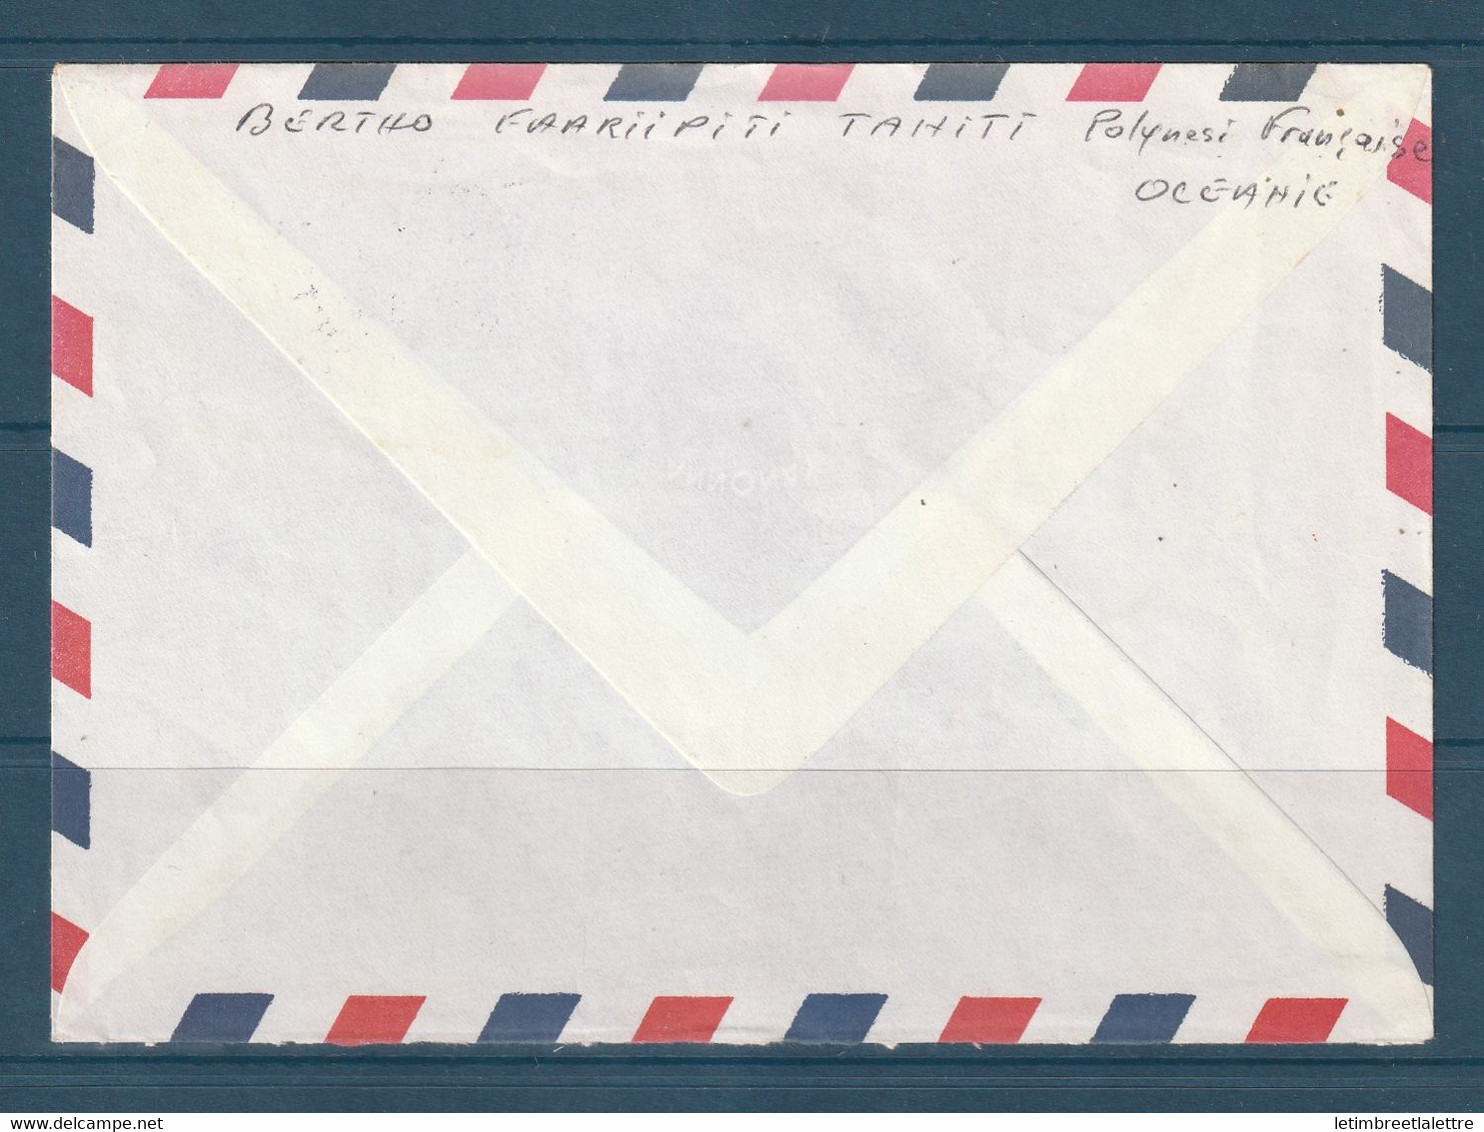 ⭐ Polynésie - Poste Aérienne - YT N° 157 - Enveloppe Décorée De Tahiti ( Pirae ) Pour La France - 1981 ⭐ - Covers & Documents